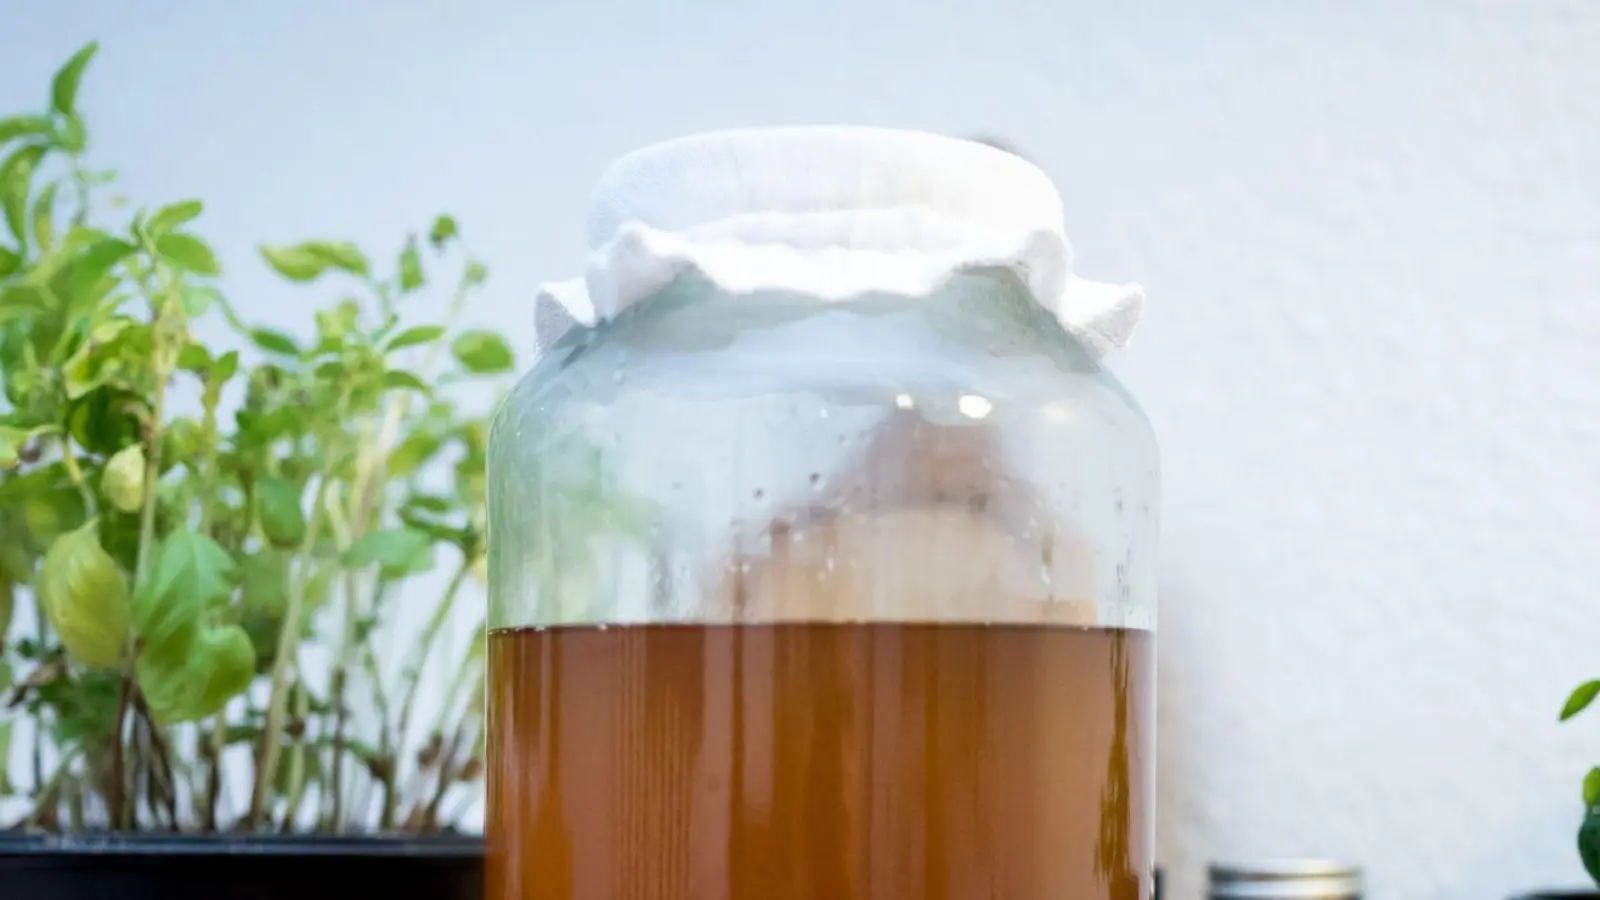 Kombucha besteht aus fermentiertem Tee. Das Getränk soll gesundheitsfördernd sein, doch wissenschaftlich nachgewiesen wurde diese Wirkung bislang nicht. (Foto: Alexander Heinl/dpa-tmn/dpa)